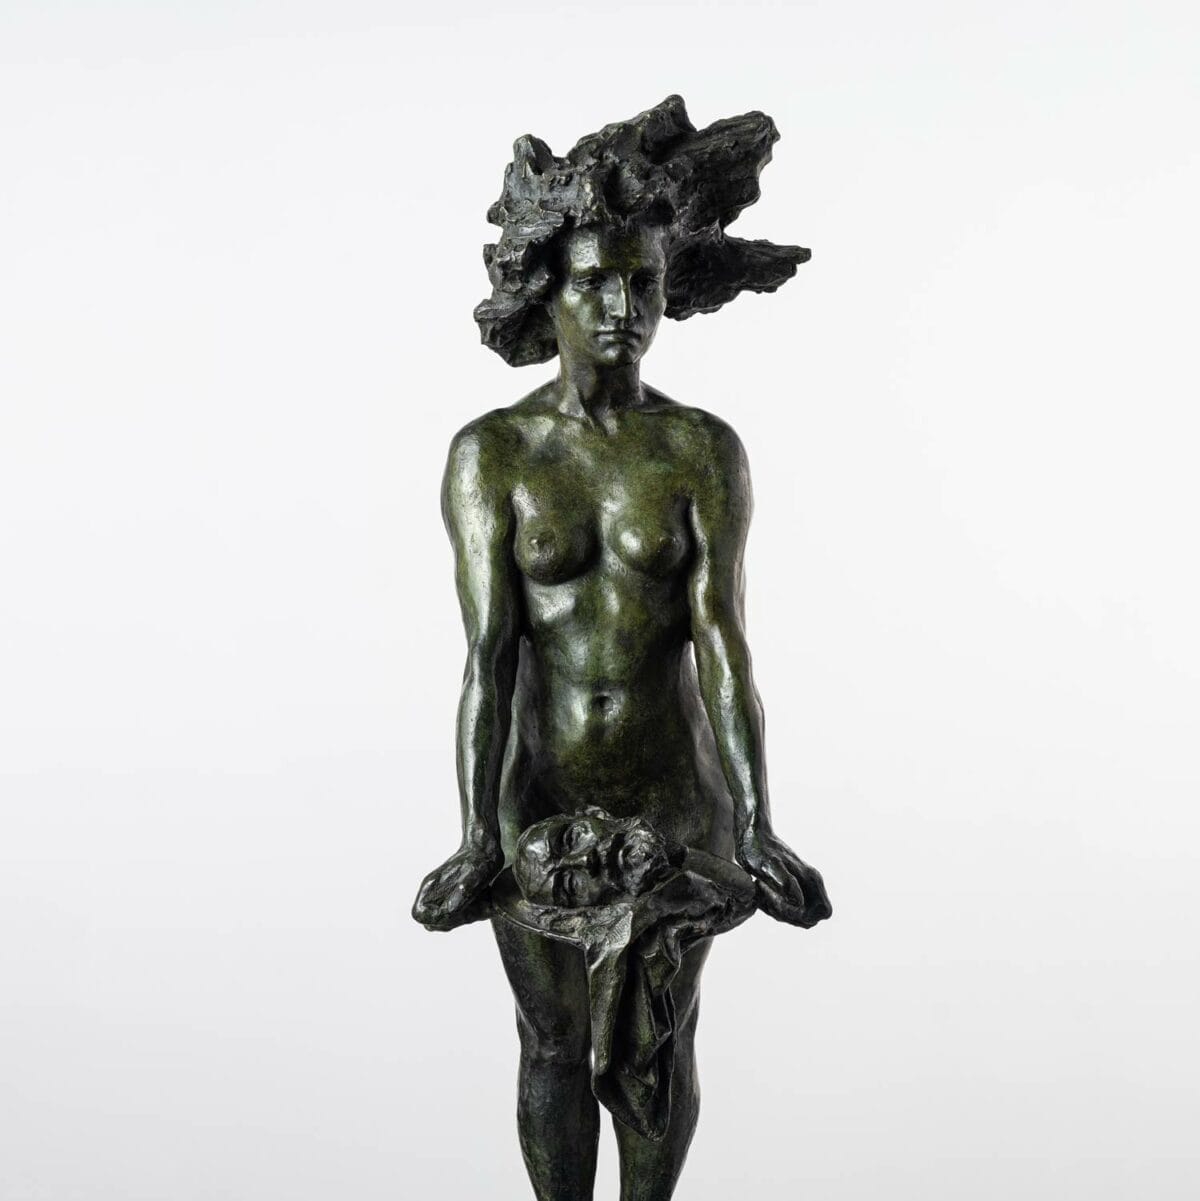 Sculpture en bronze de Salomé par Guy Le Perse, sculpteur français influencé par les grands mythes et la Bible. Guy Le Perse puise également son inspiration chez Rodin et Michel-Ange.